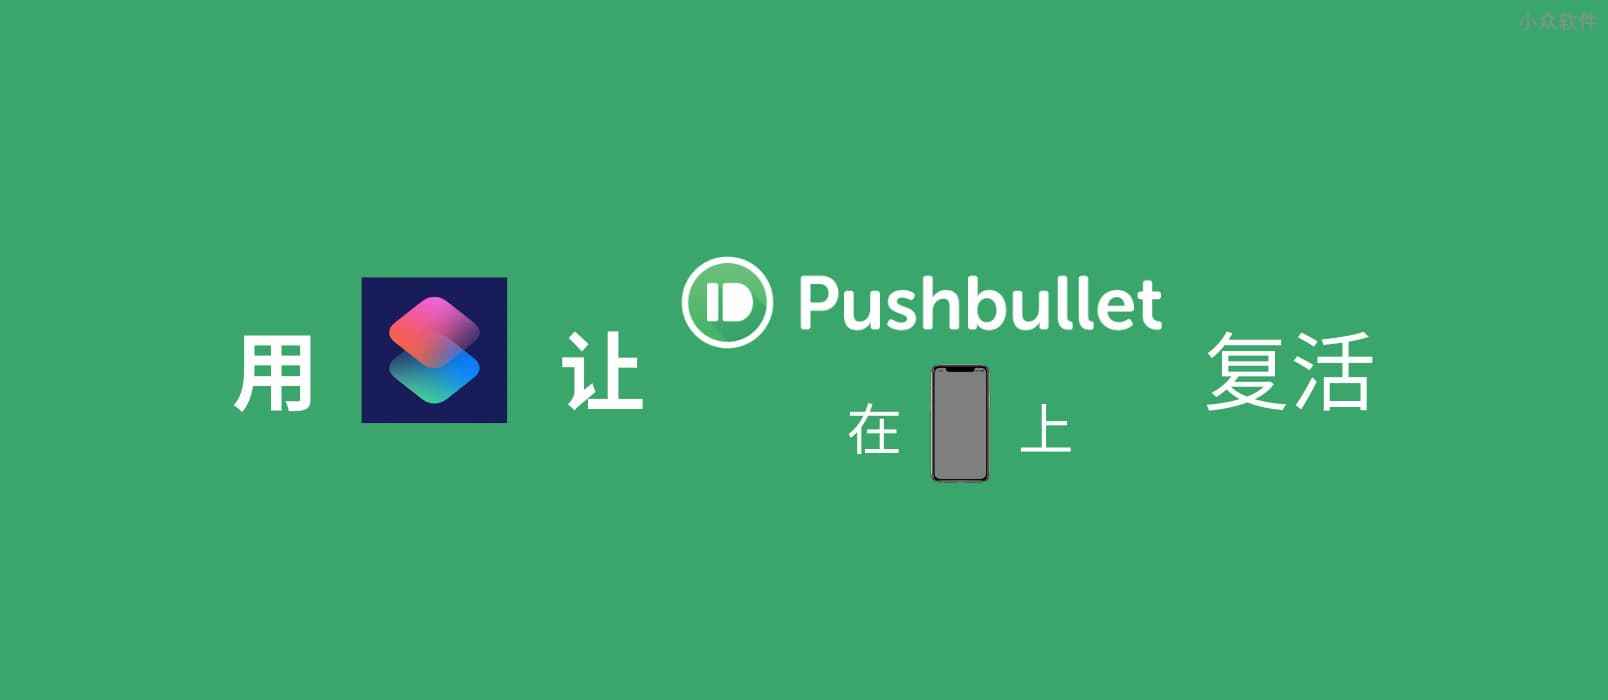 跨平台传输内容，用快捷指令让 Pushbullet 在 iPhone 上复活